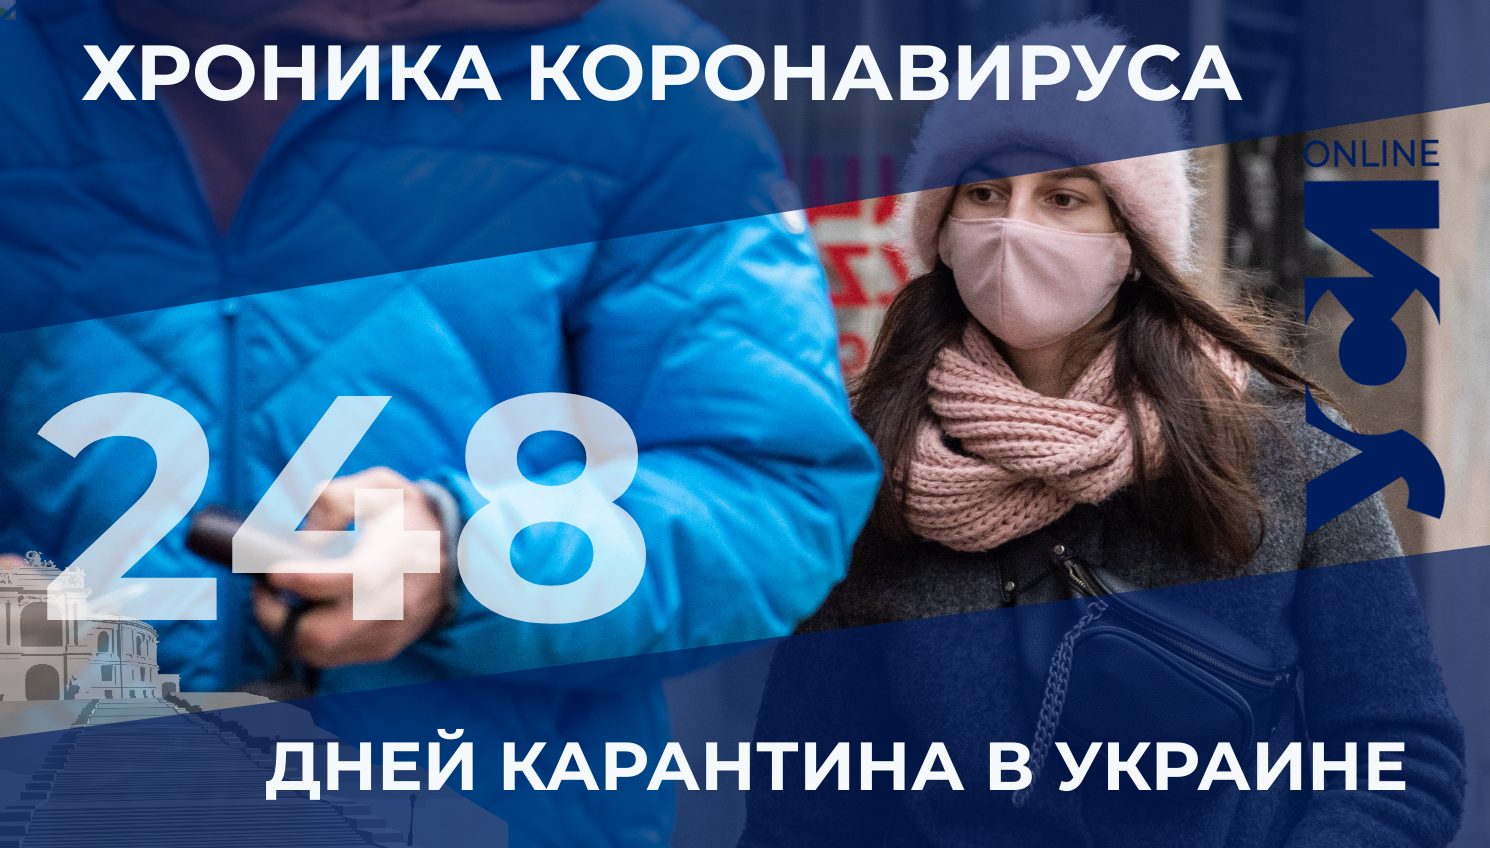 Хроника коронавируса: 248 дней карантина в Украине «фото»